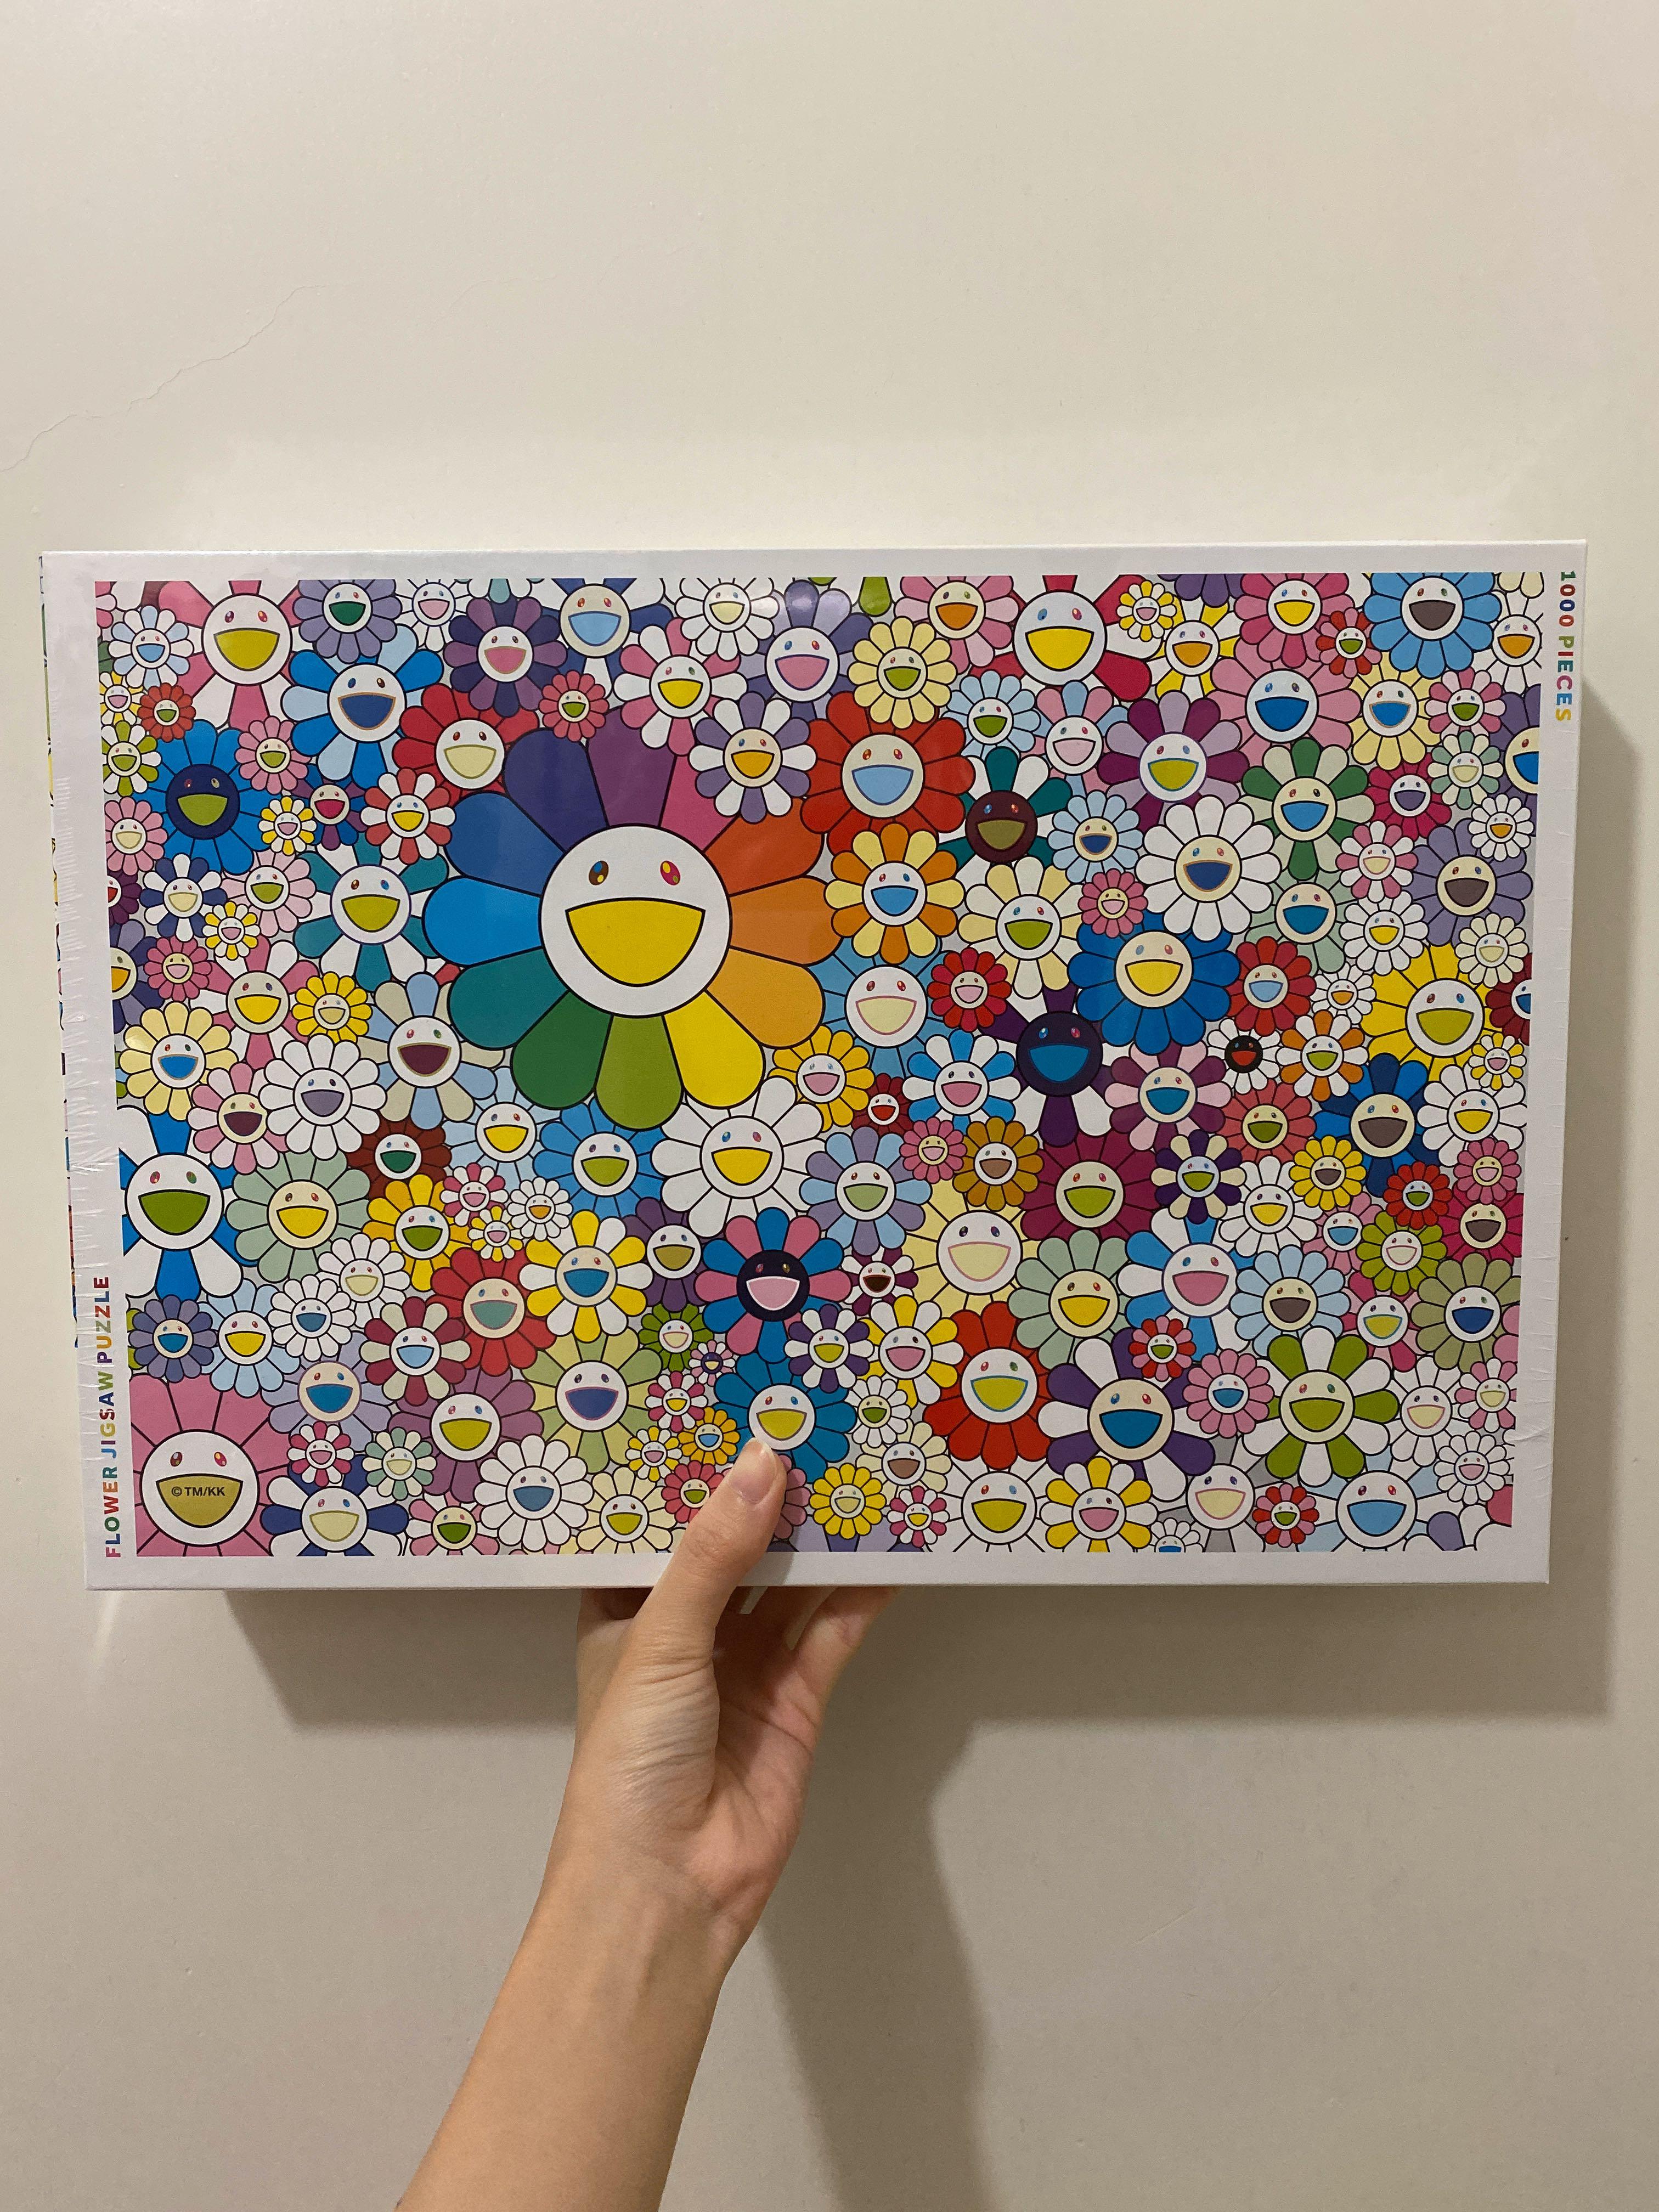 村上隆 Jigsaw Puzzle Murakami Flowers パズル